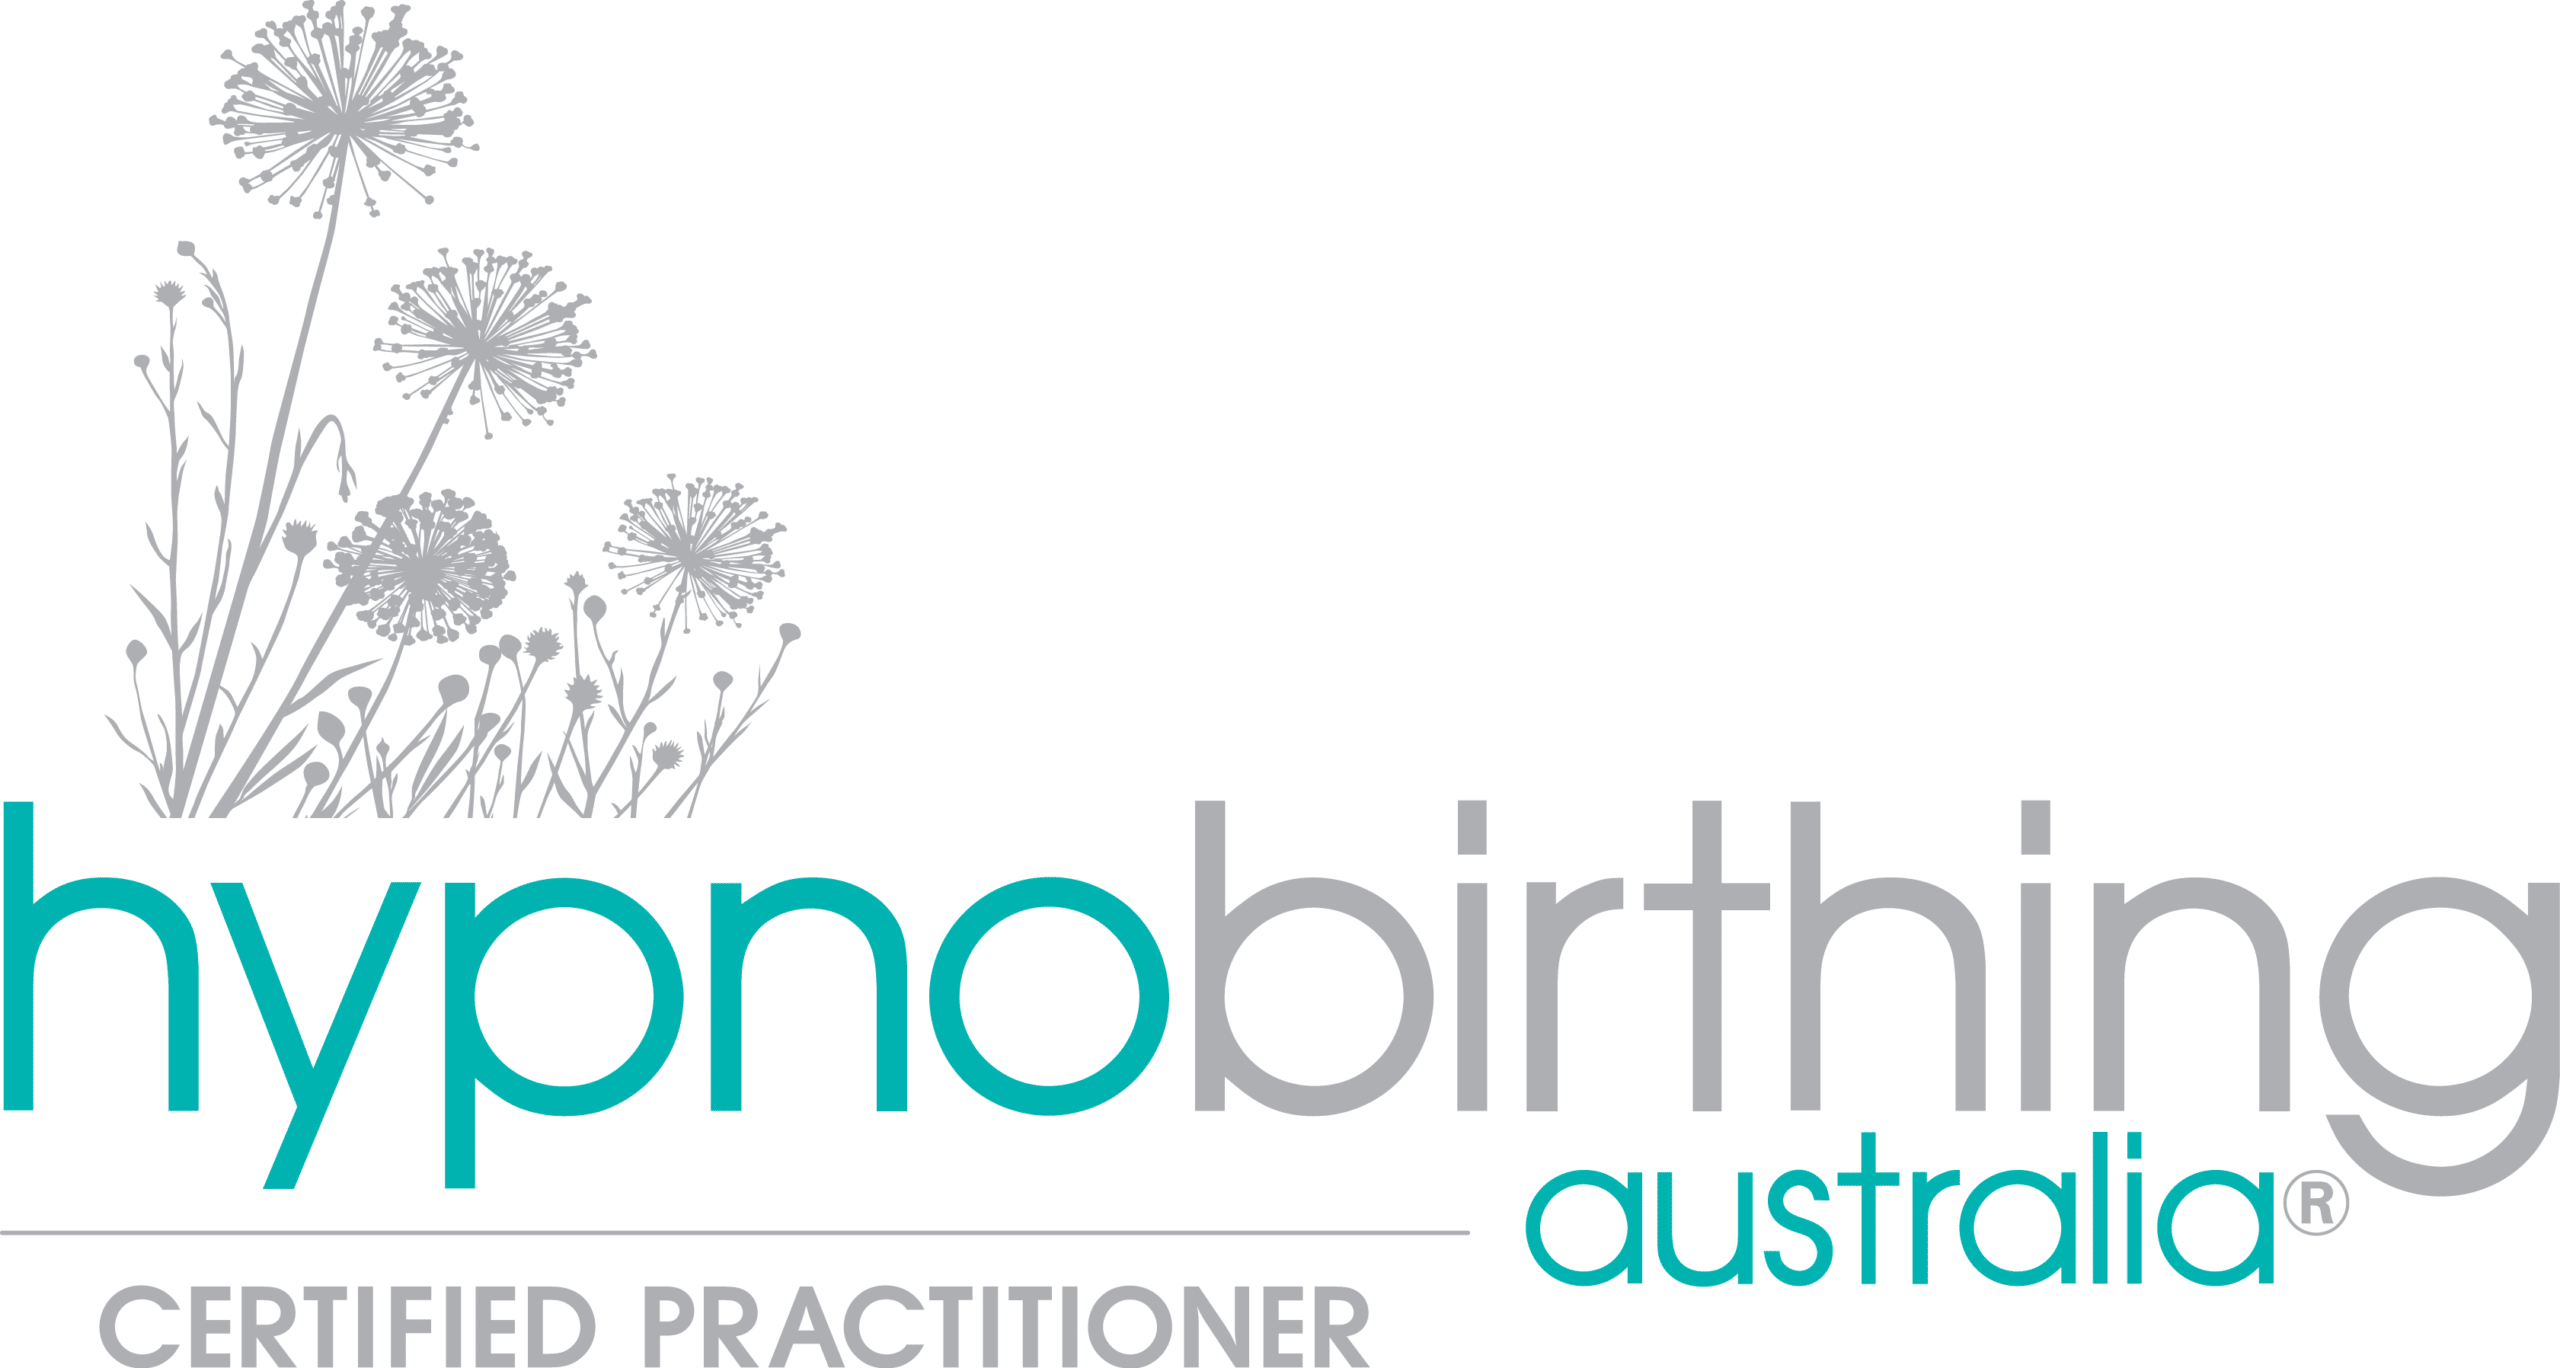 Hypnobirthing Australia logo